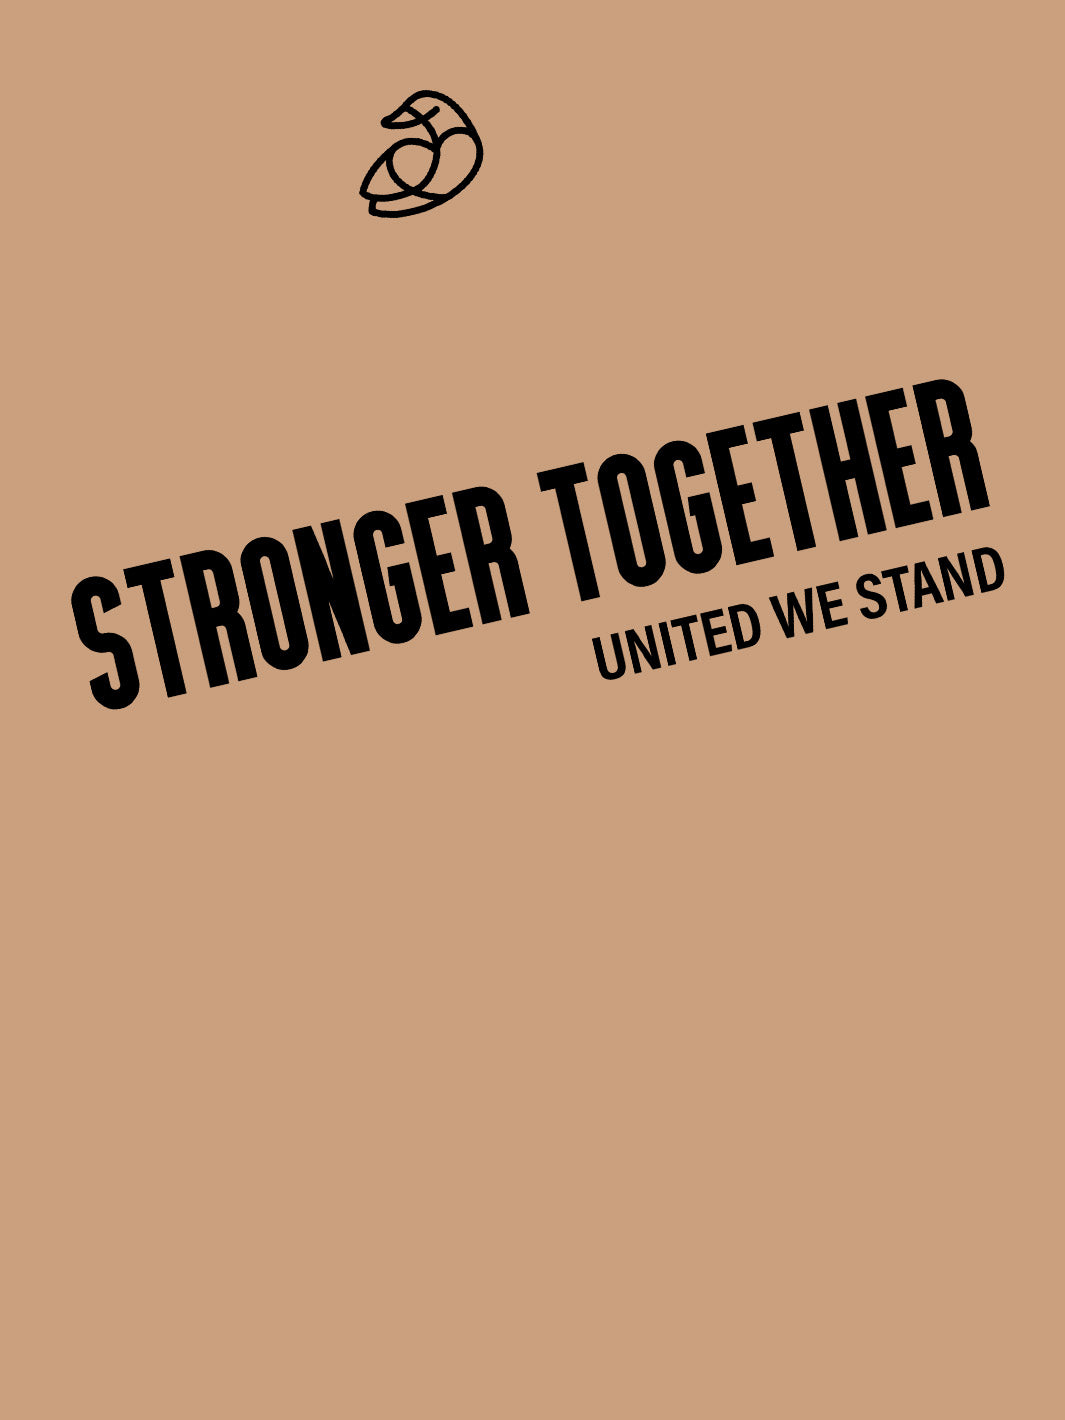 Men ADOS- Soft Tshirt - Stronger Together